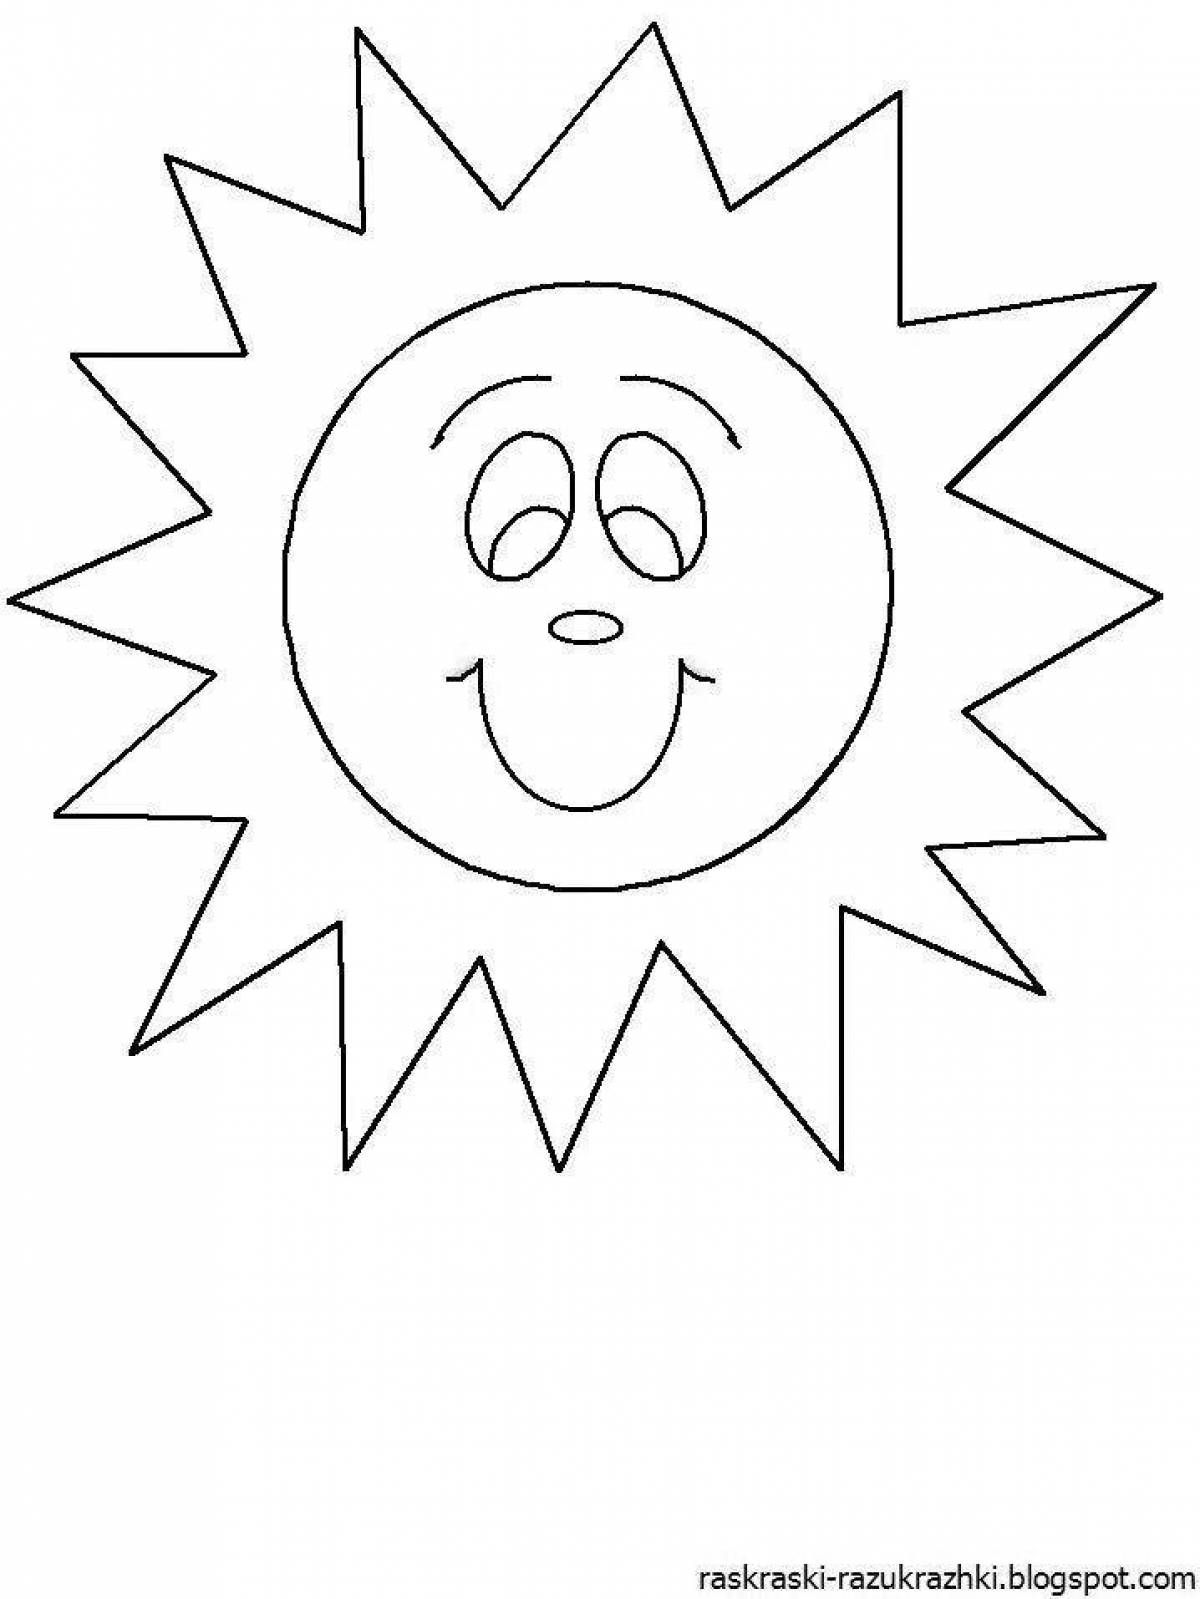 Лучистая раскраска солнце для детей 3-4 лет